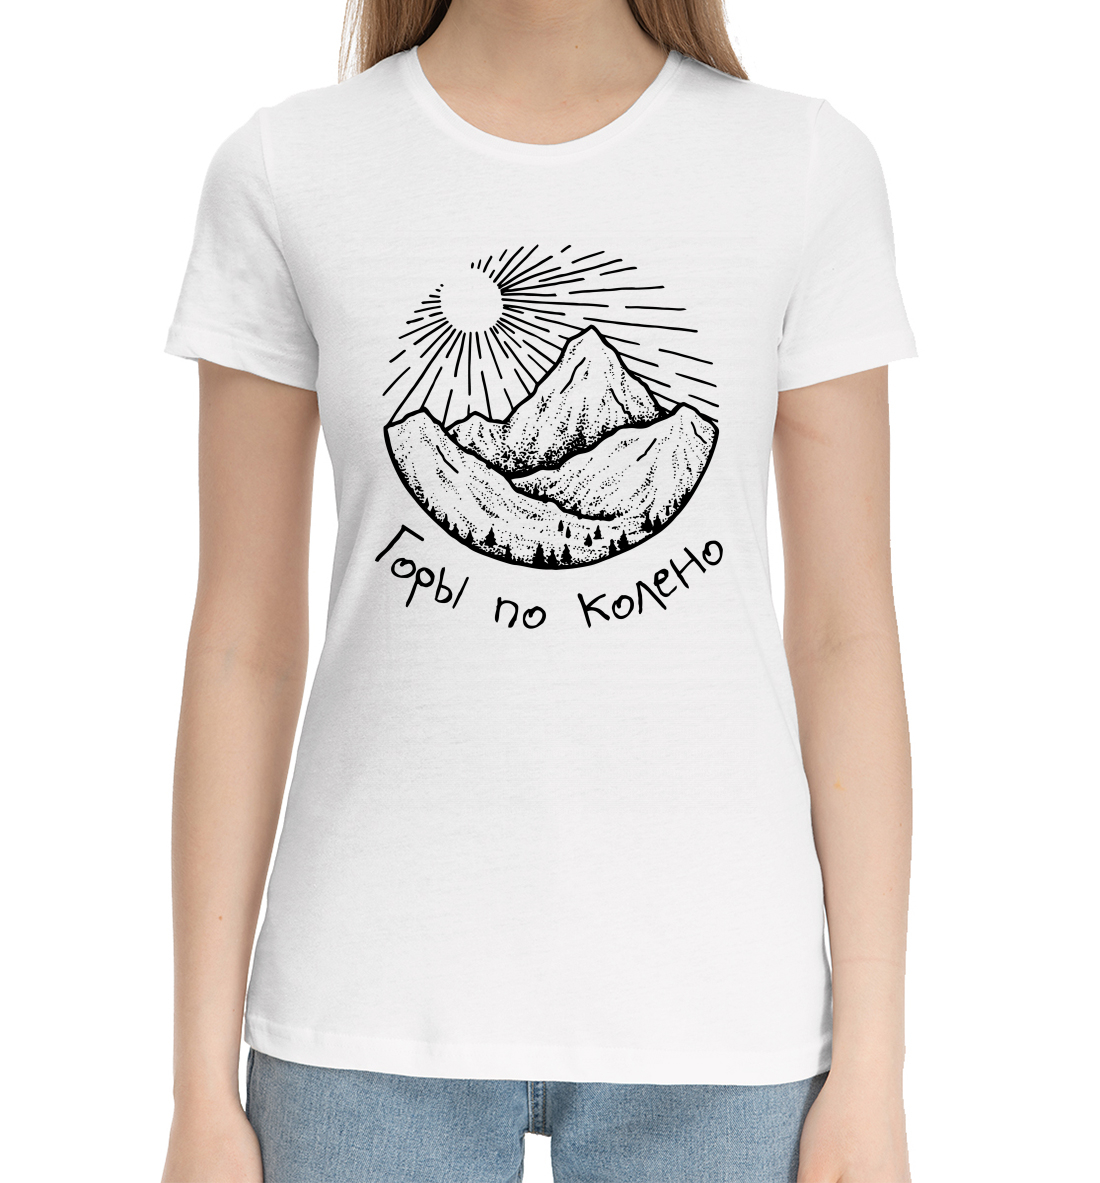 Женская Хлопковая футболка с надписью Горы по колено, артикул NDP-884921-hfu-1mp